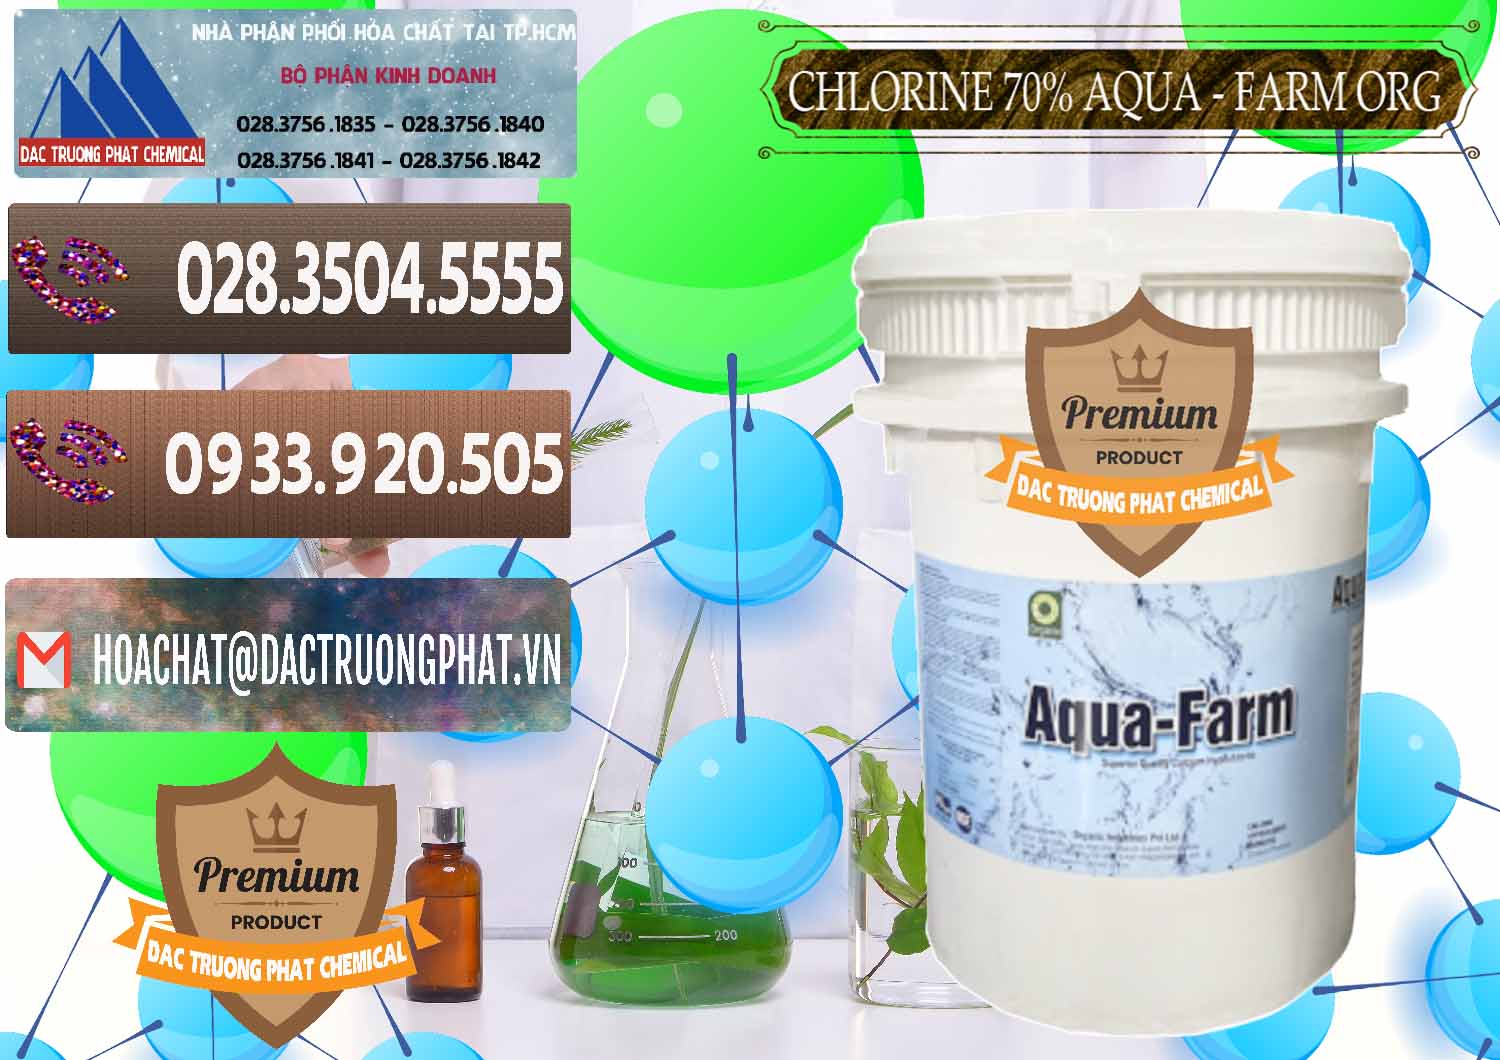 Đơn vị bán _ cung ứng Chlorine – Clorin 70% Aqua - Farm ORG Organic Ấn Độ India - 0246 - Nơi chuyên cung cấp và bán hóa chất tại TP.HCM - hoachatviet.net